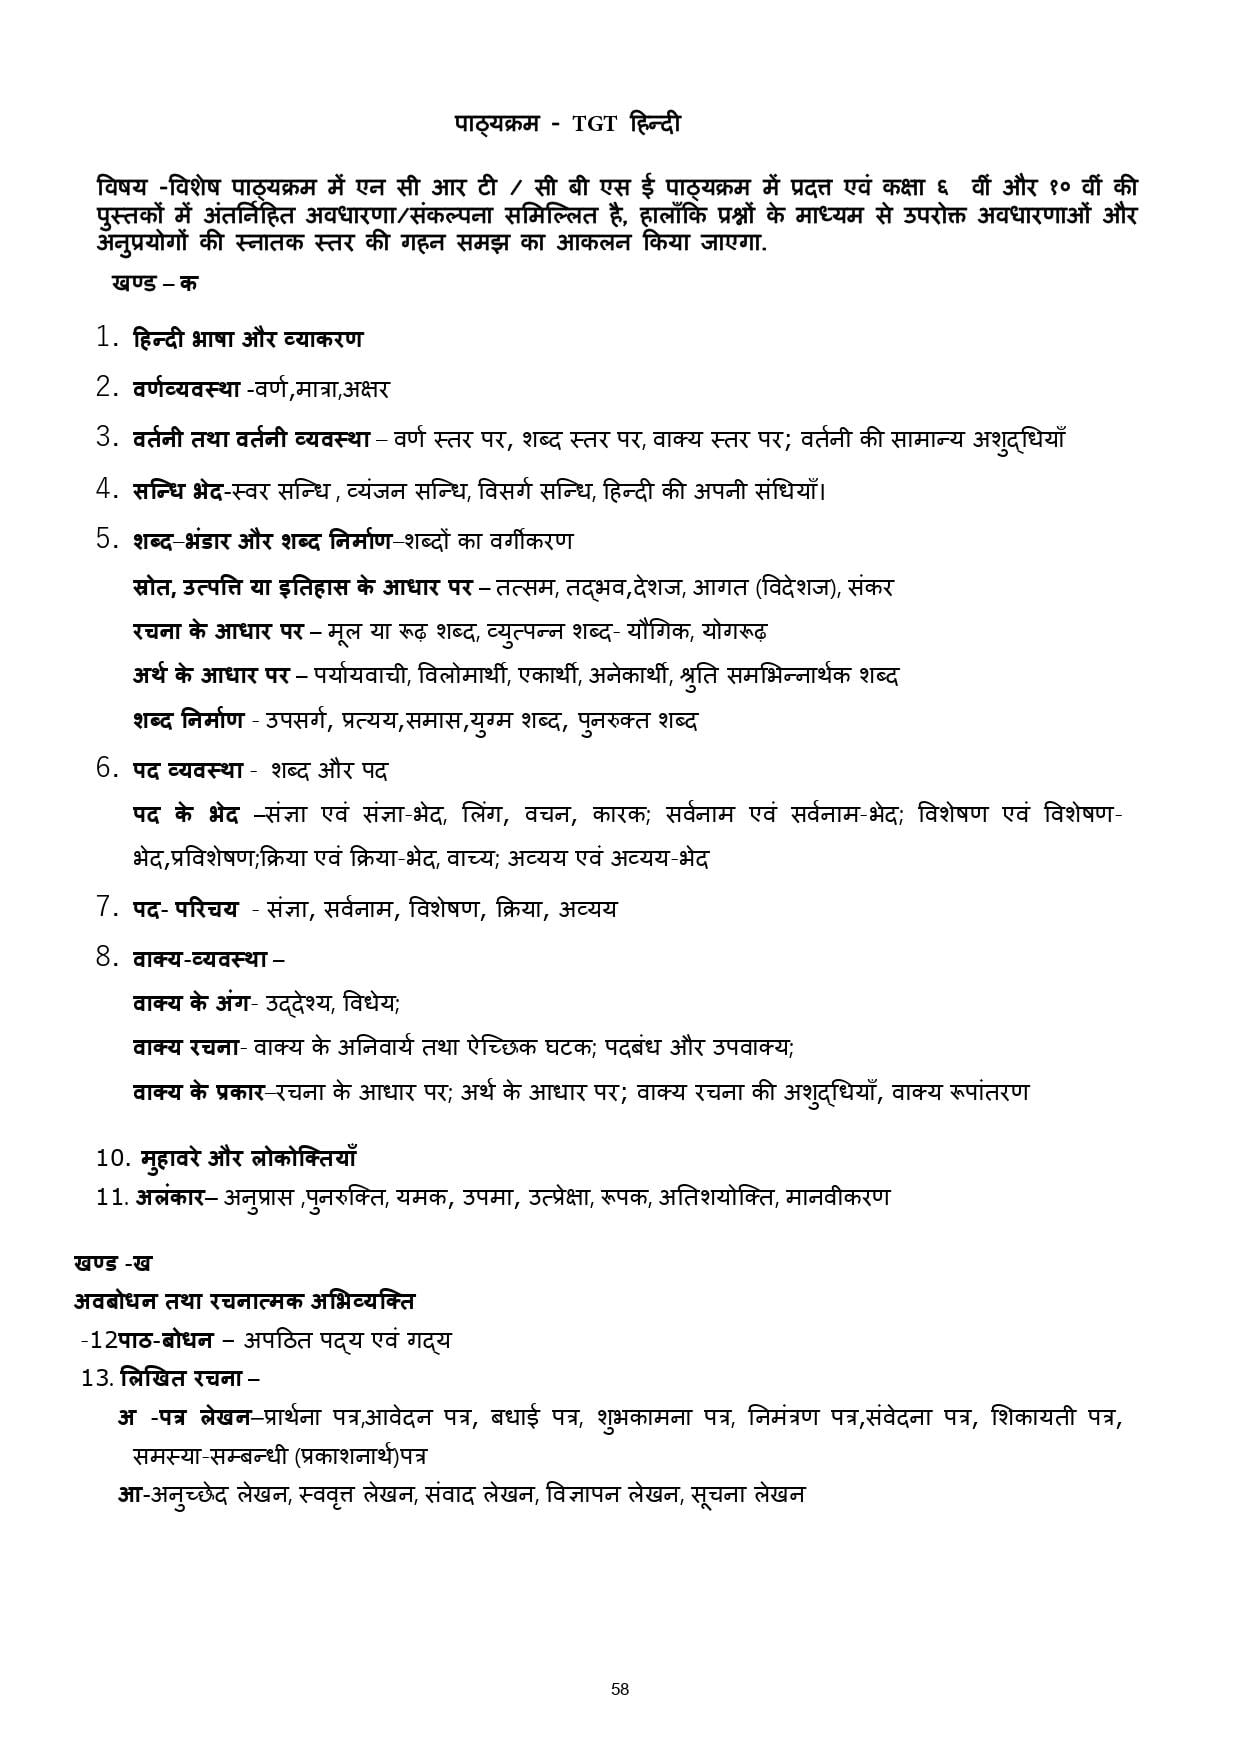 Kvs tgt Hindi syllabus 2022 pdf download 